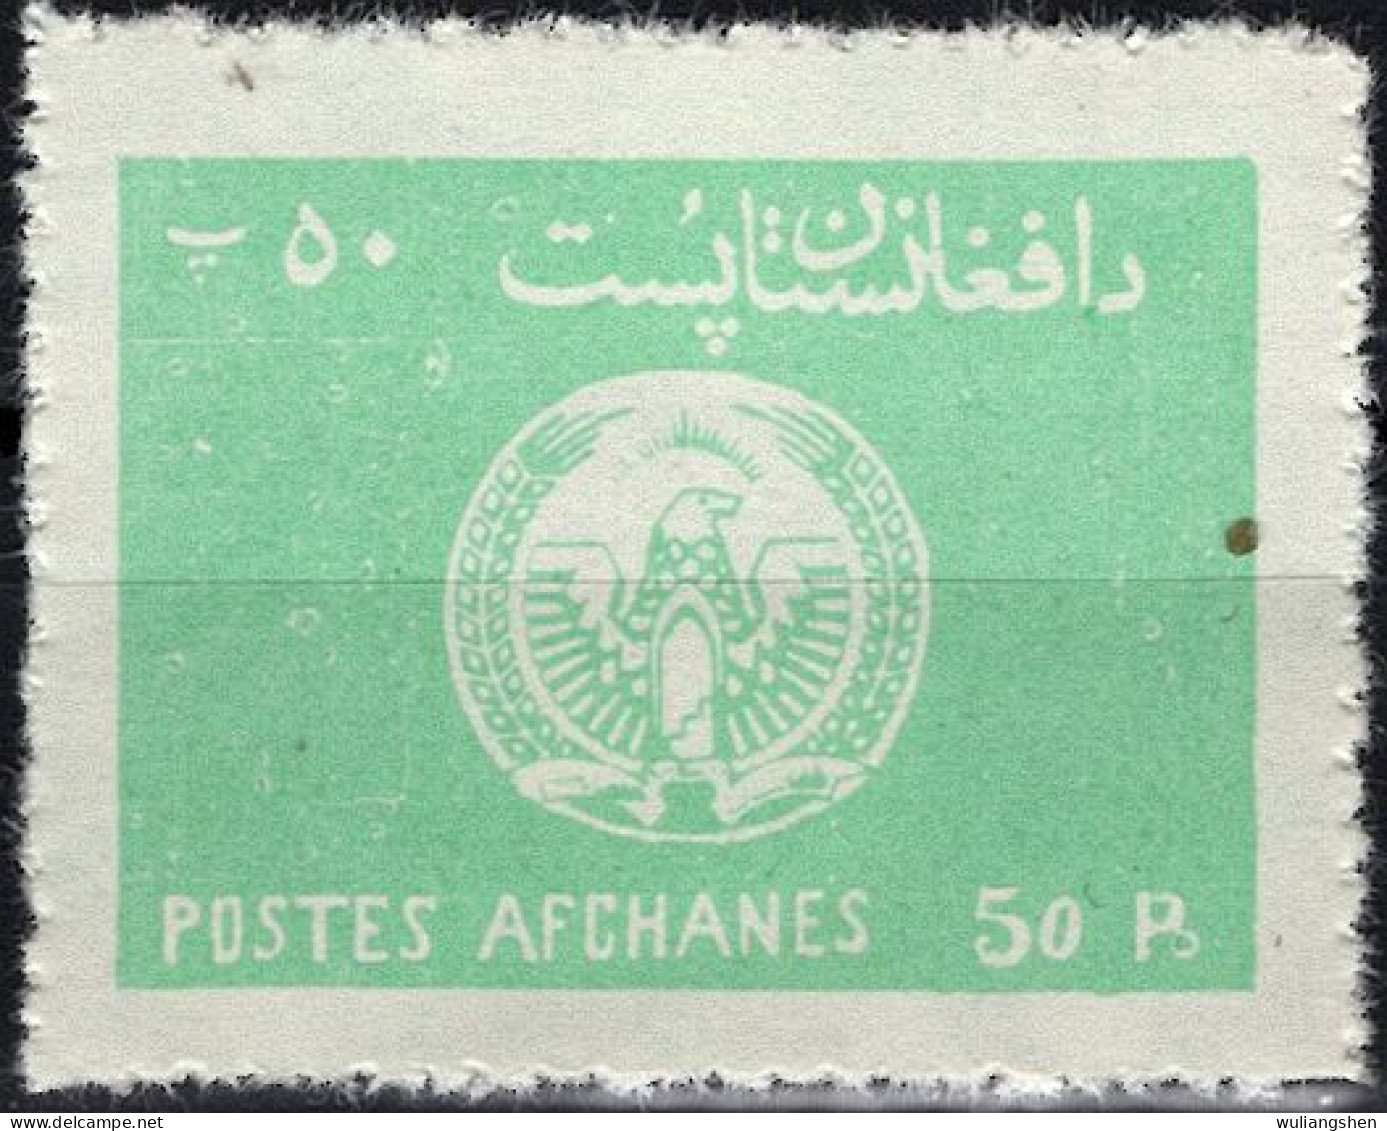 AFH032 Afghanistan 1976 National Emblem Of The Republic 1v MNH - Afghanistan